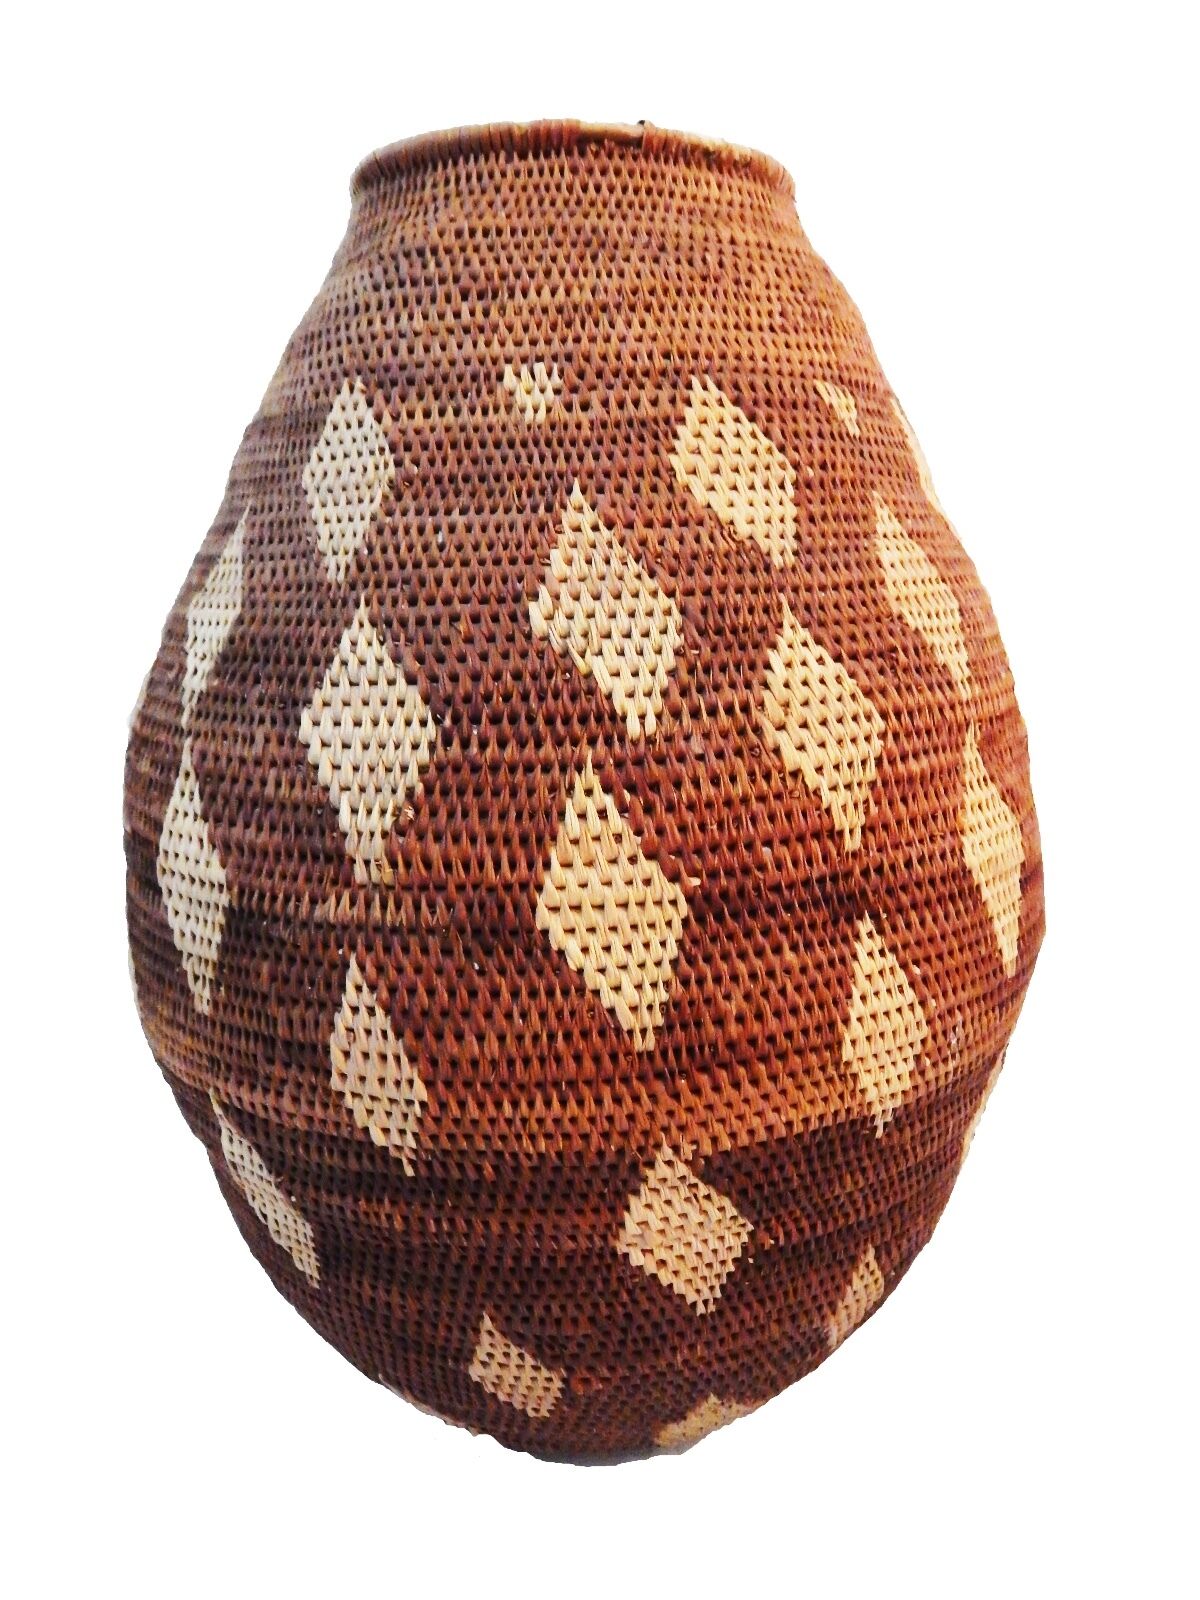 #ABV1 Large Vintage Botswana Handmade  African Basket Primitives Folk Art 14.5"h